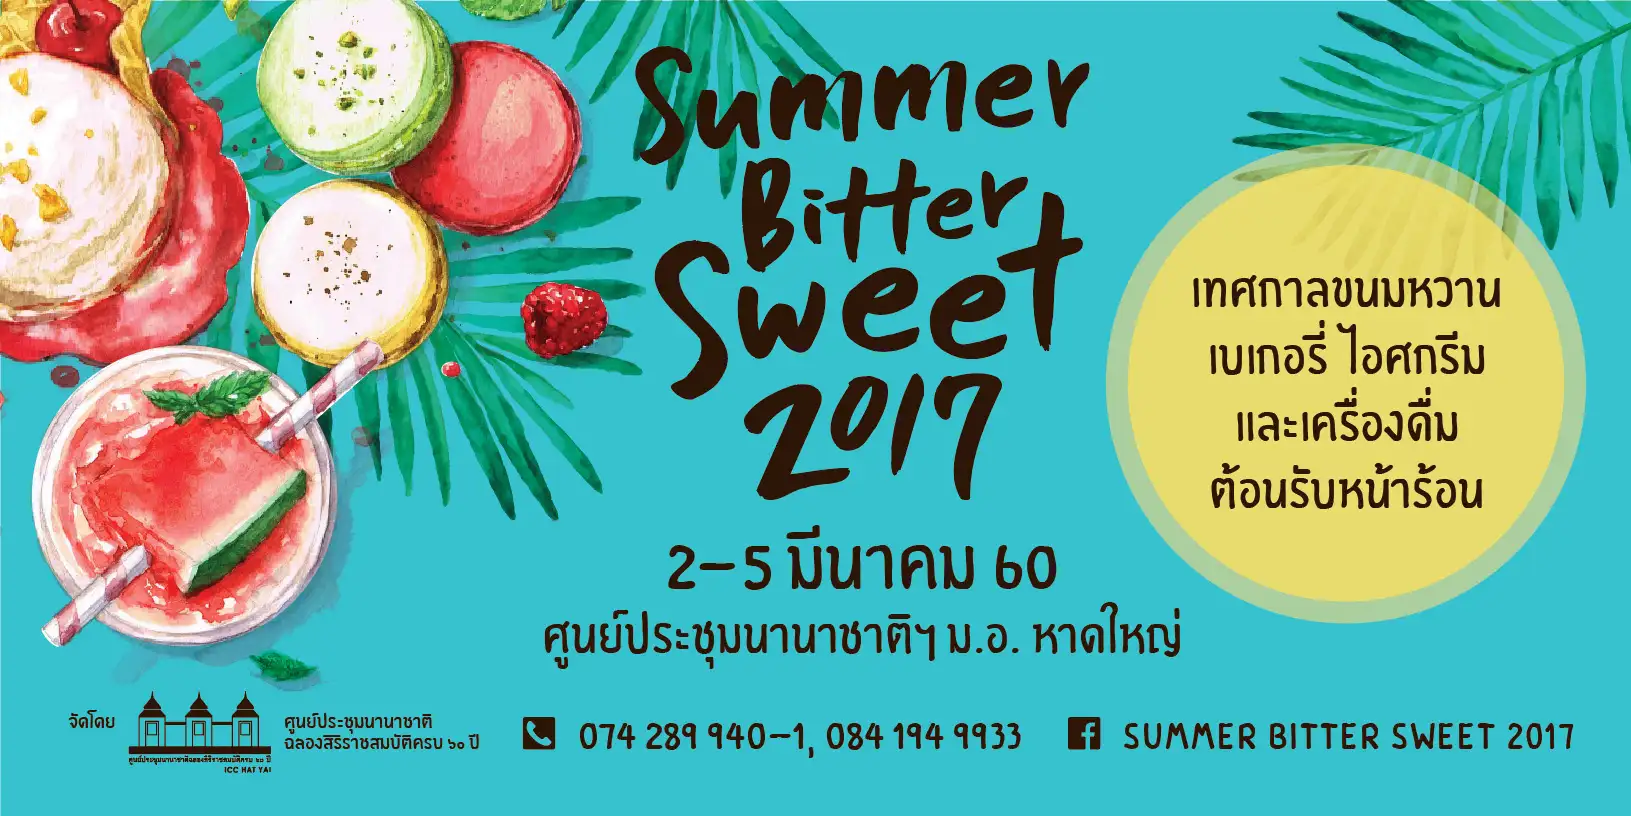 Summer Bitter Sweet 2017.jpg